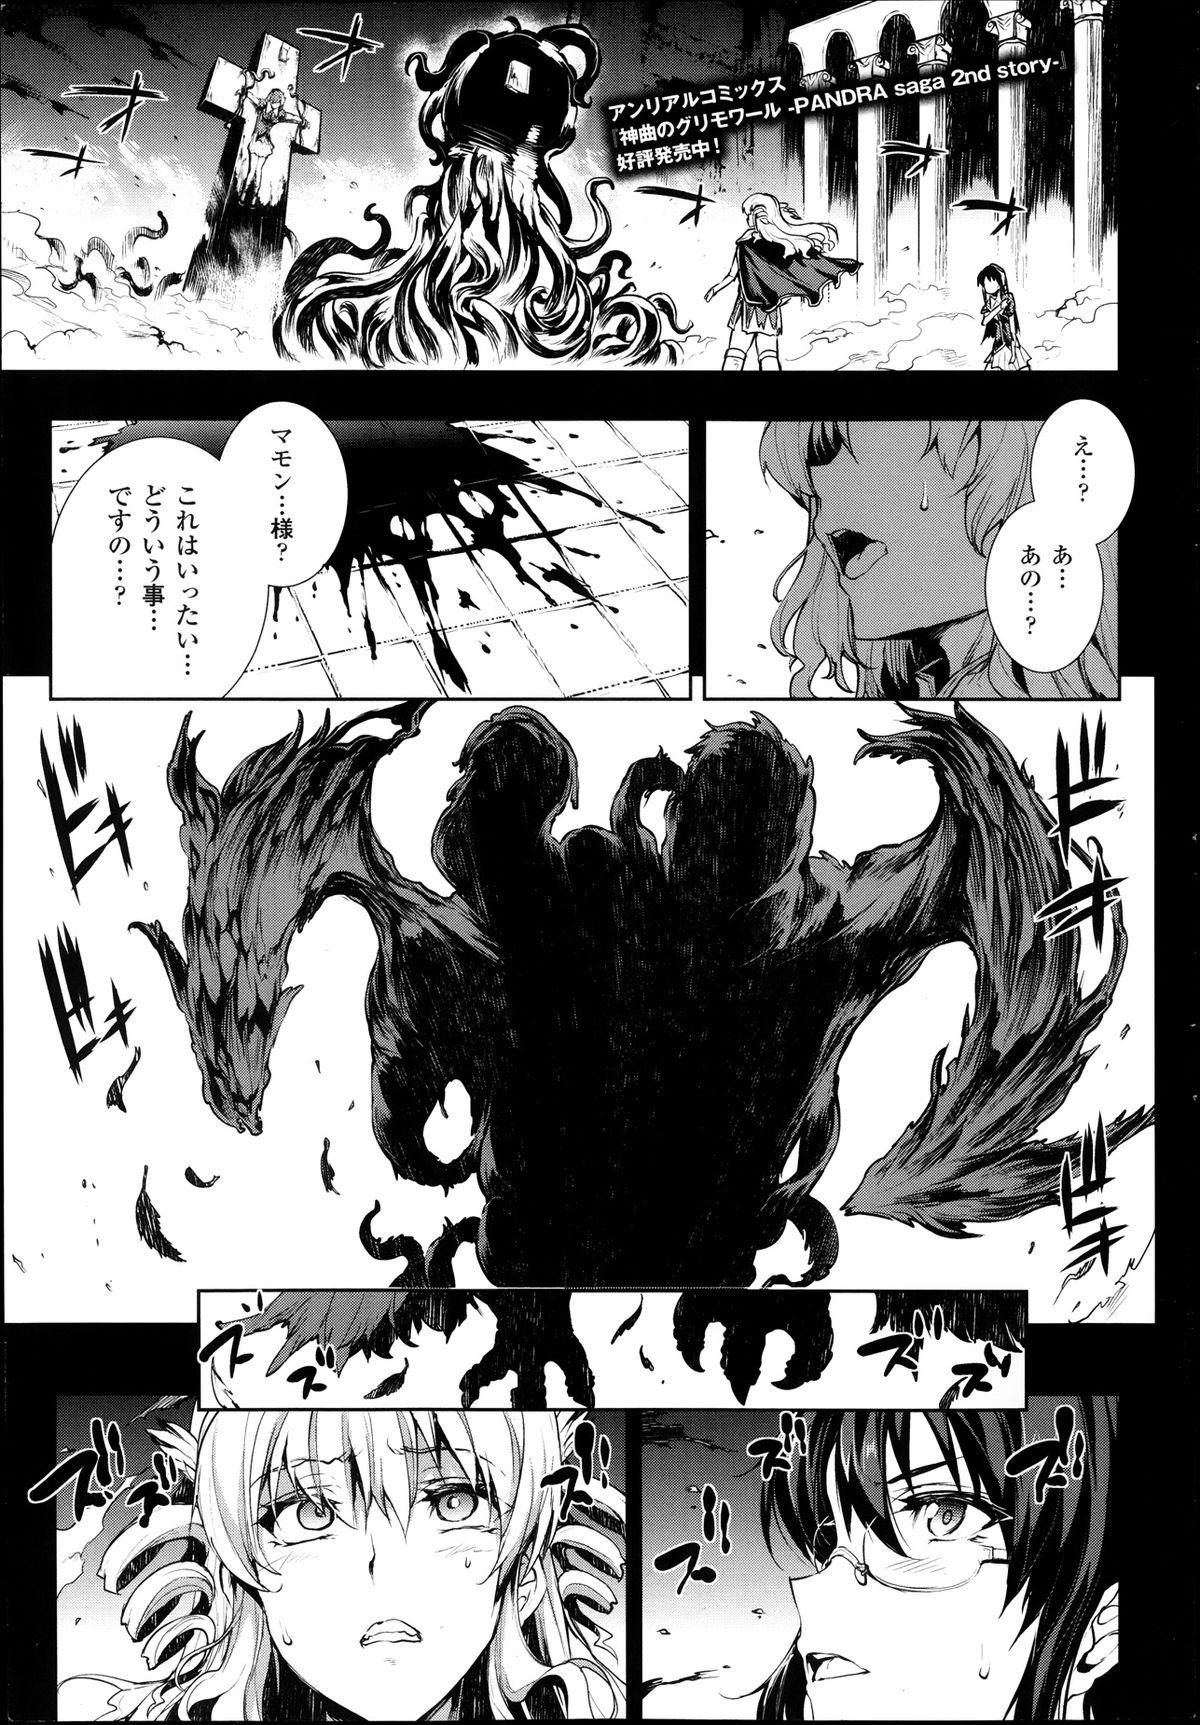 [Erect Sawaru] Shinkyoku no Grimoire -PANDRA saga 2nd story- Ch 07-9.5 52